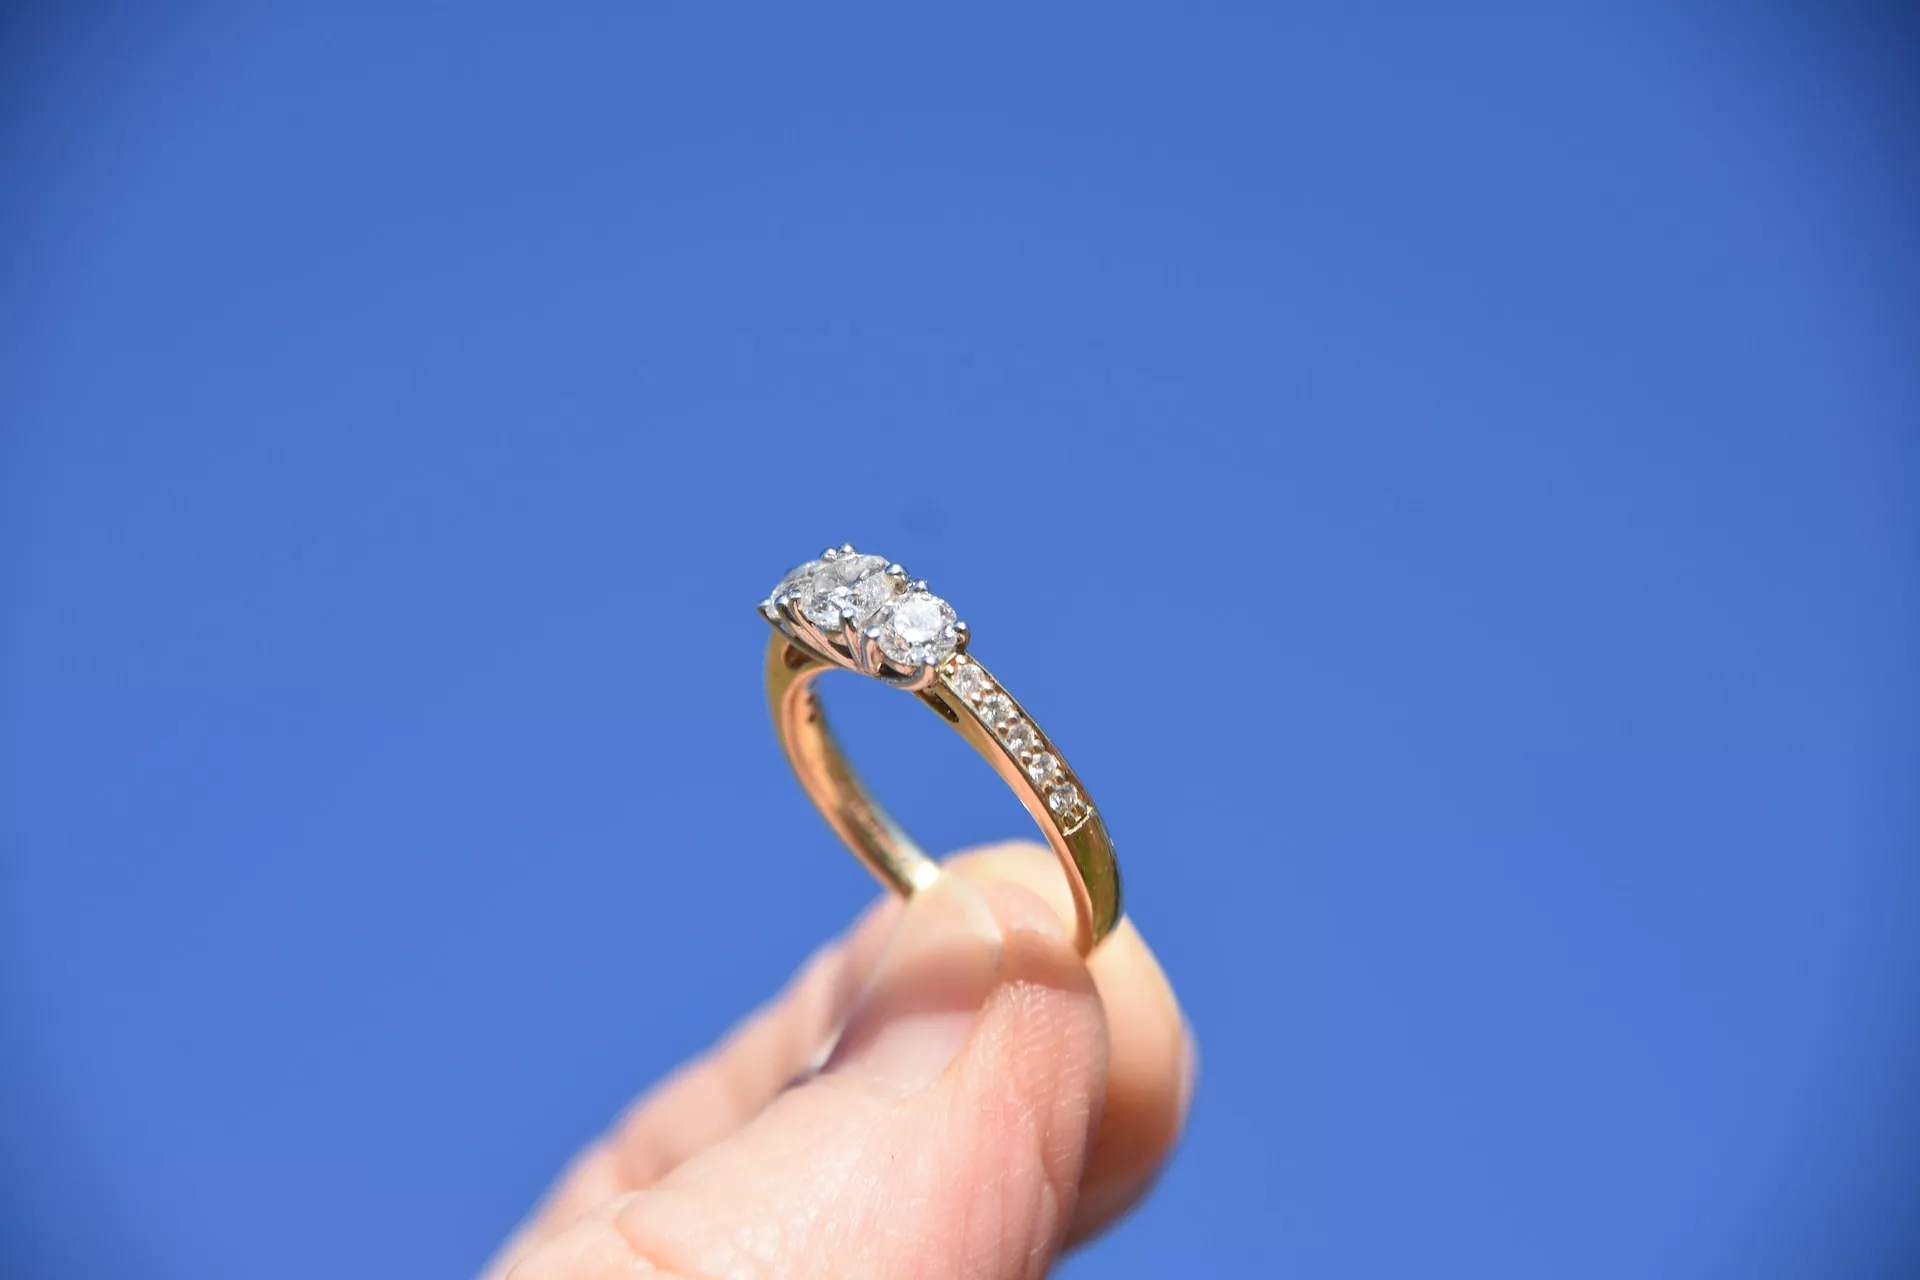 戒台材質使用的金屬也與鑽石戒指價格有關。